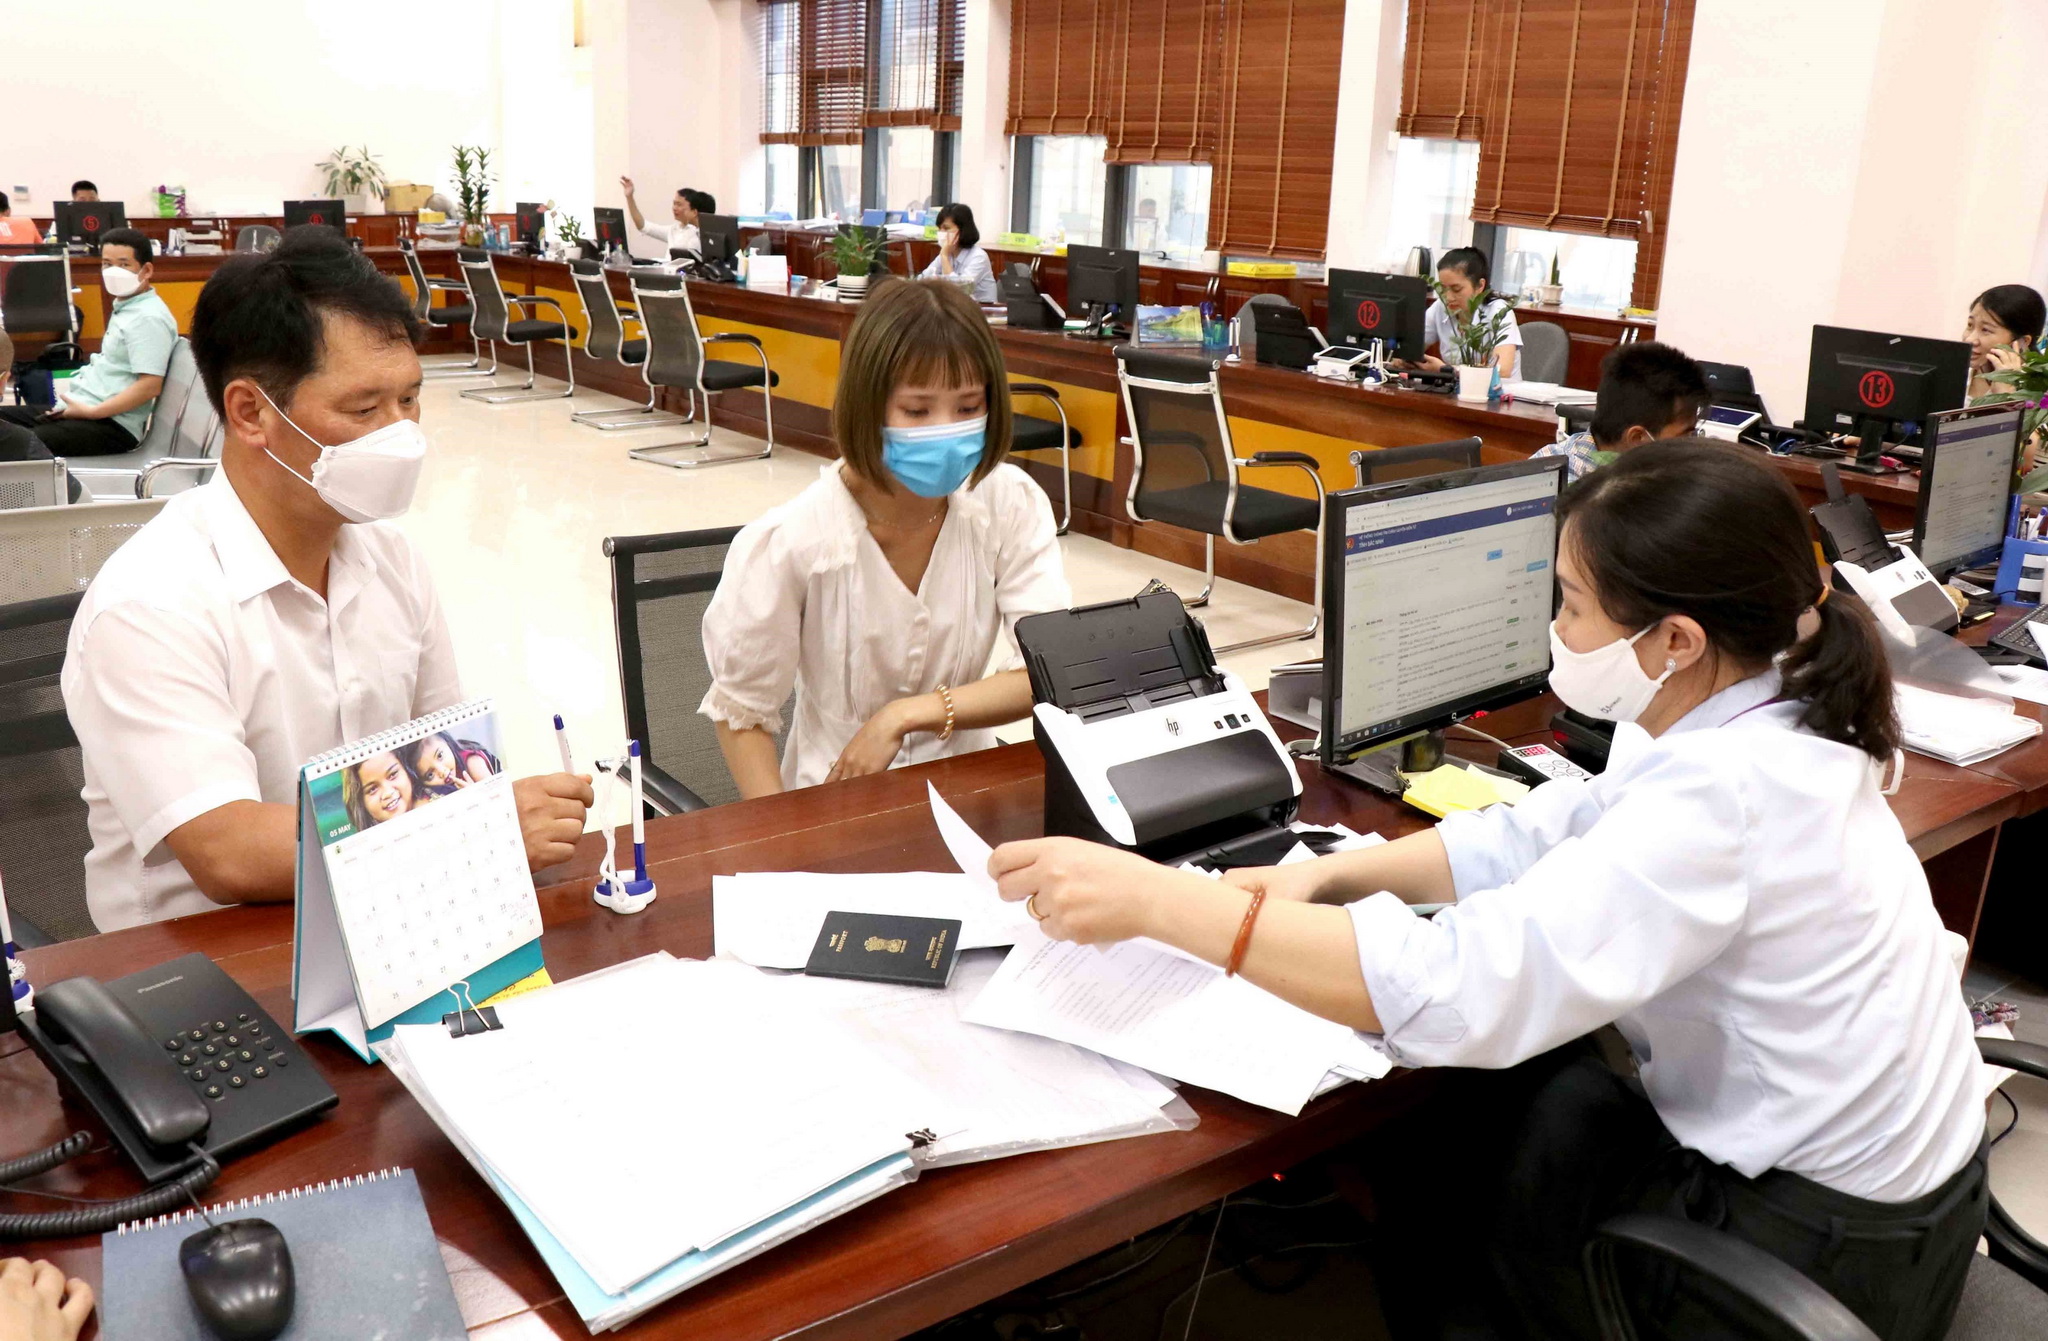 Cán bộ, nhân viên Trung tâm hành chính công tỉnh Bắc Ninh hướng dẫn người dân, doanh nghiệp giải quyết các thủ tục hành chính. (Ảnh: Đinh Văn Nhiều/TTXVN)